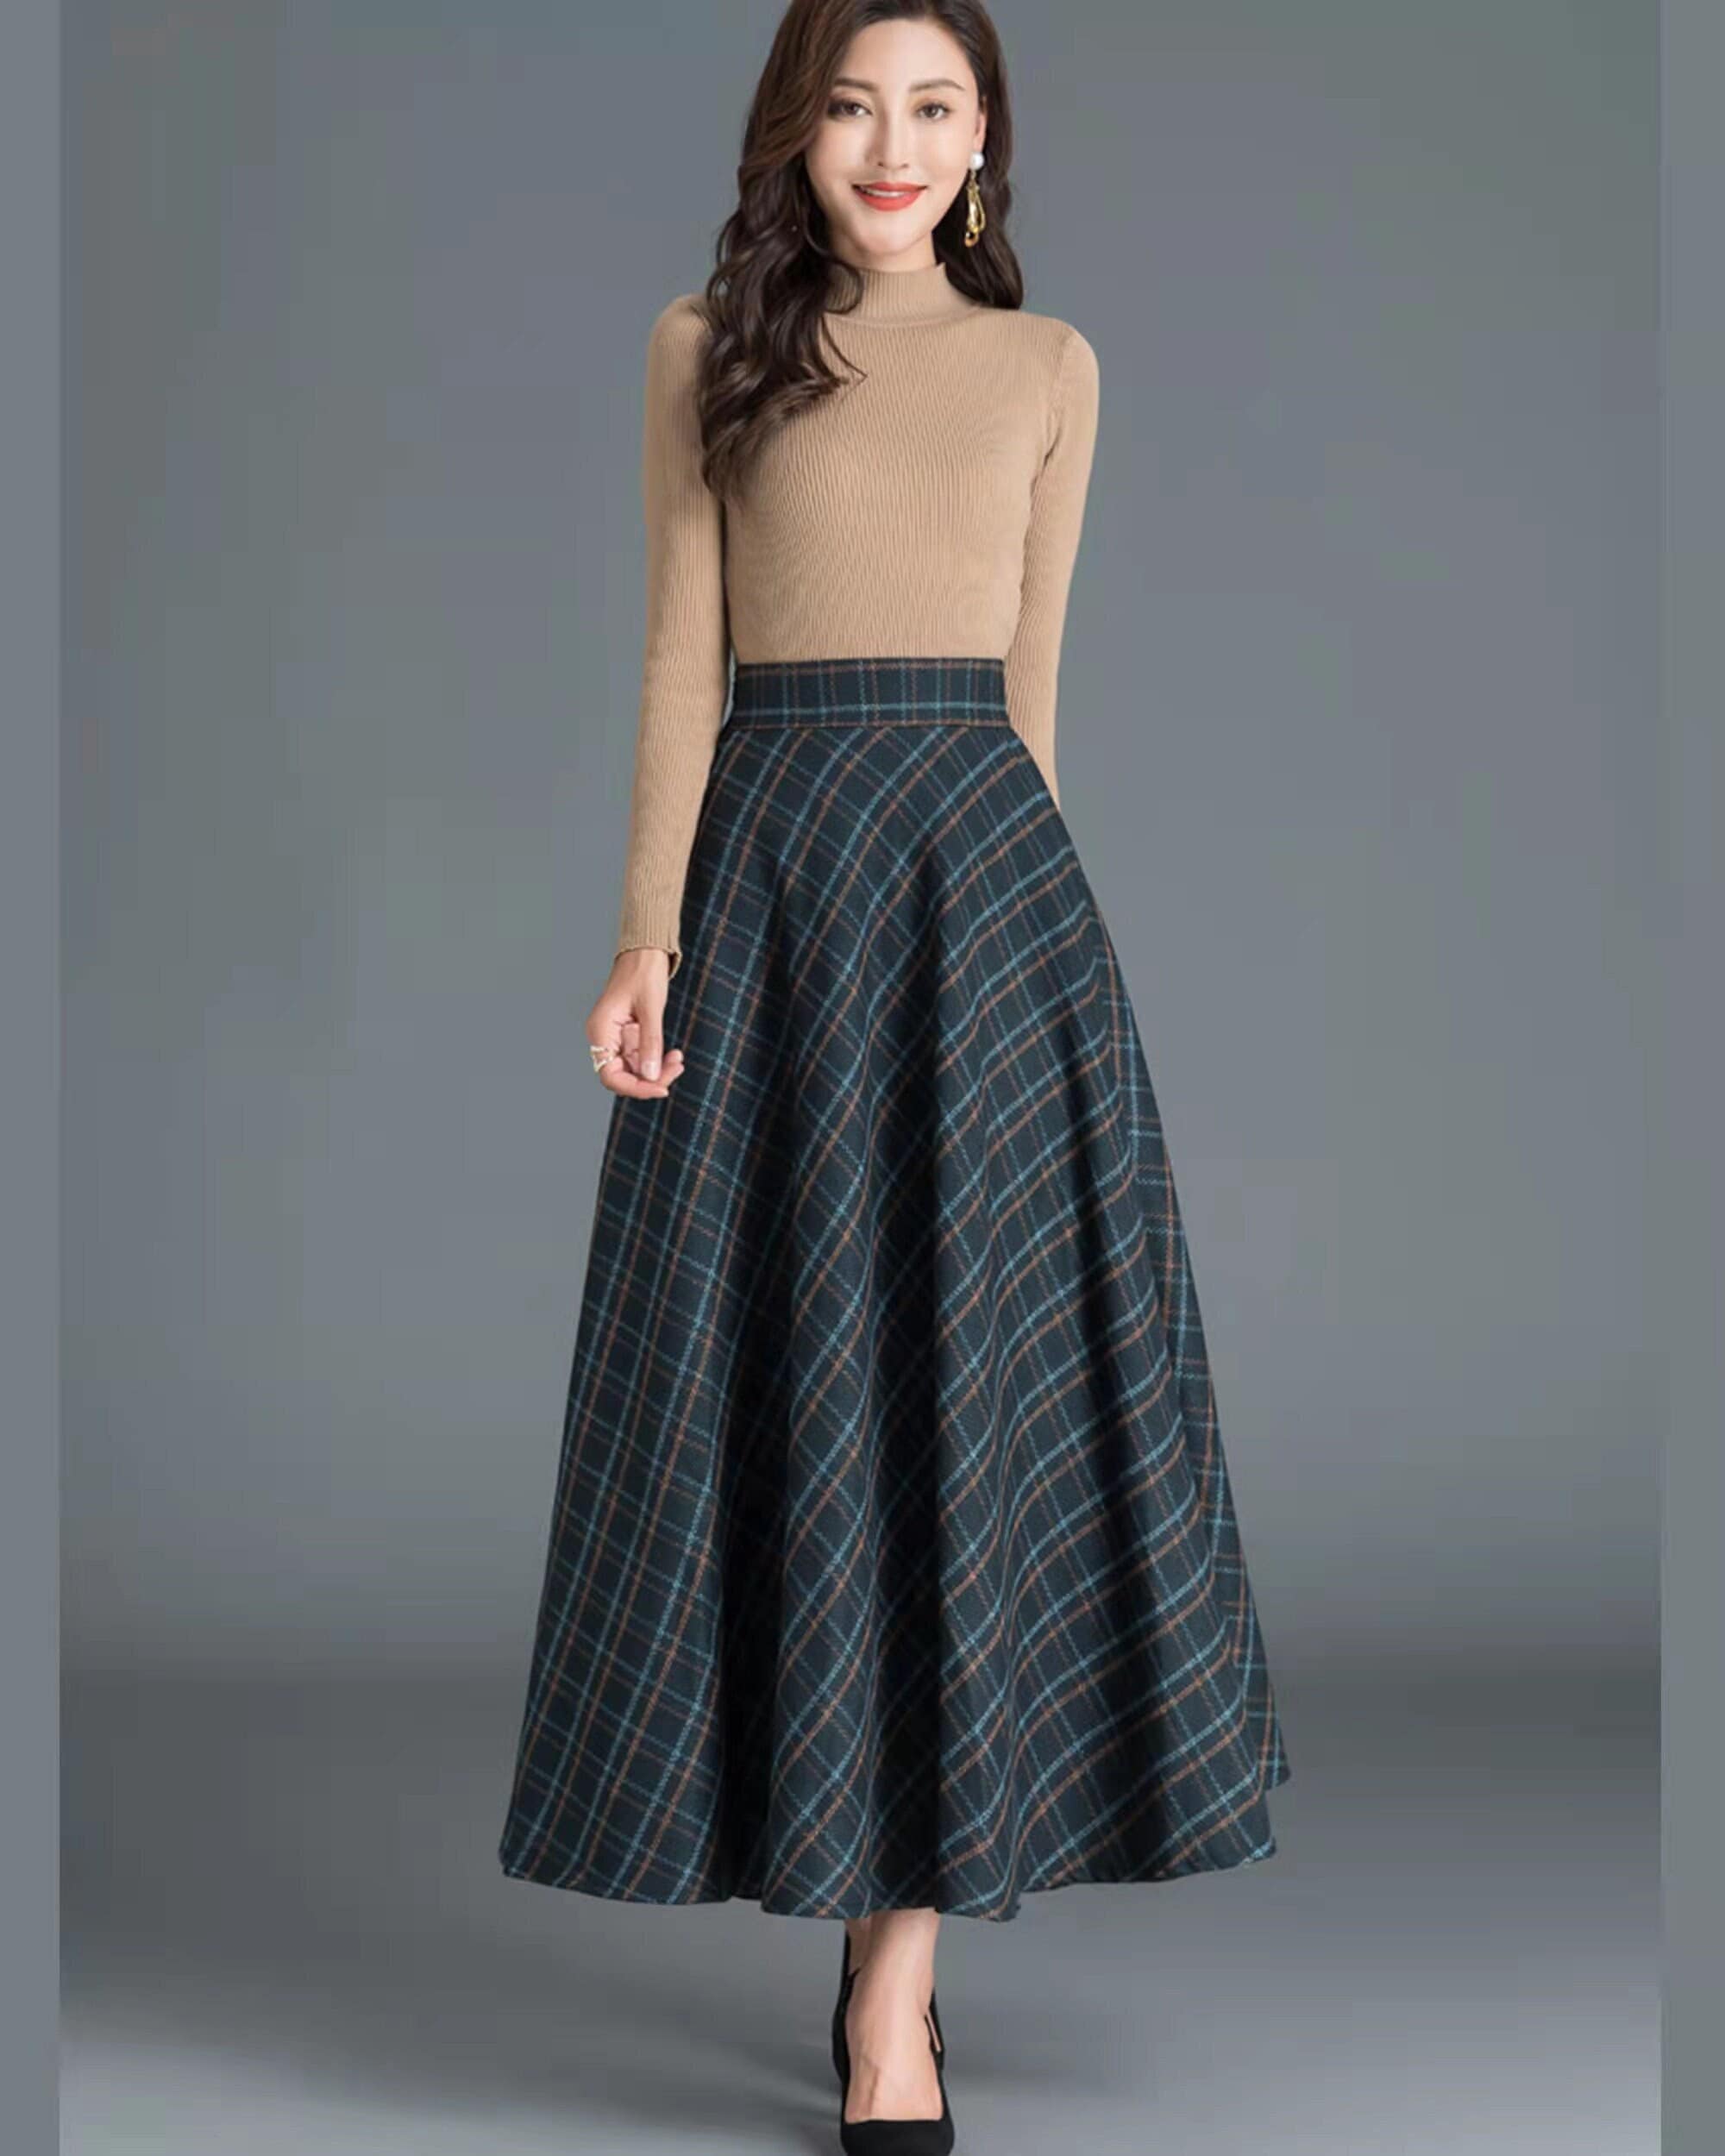 Women's Winter Elegant Warm Long Skirt Wool Maxi Skirts Elastic Waist  A-Line High Waist Plaid Pleated Skirt 